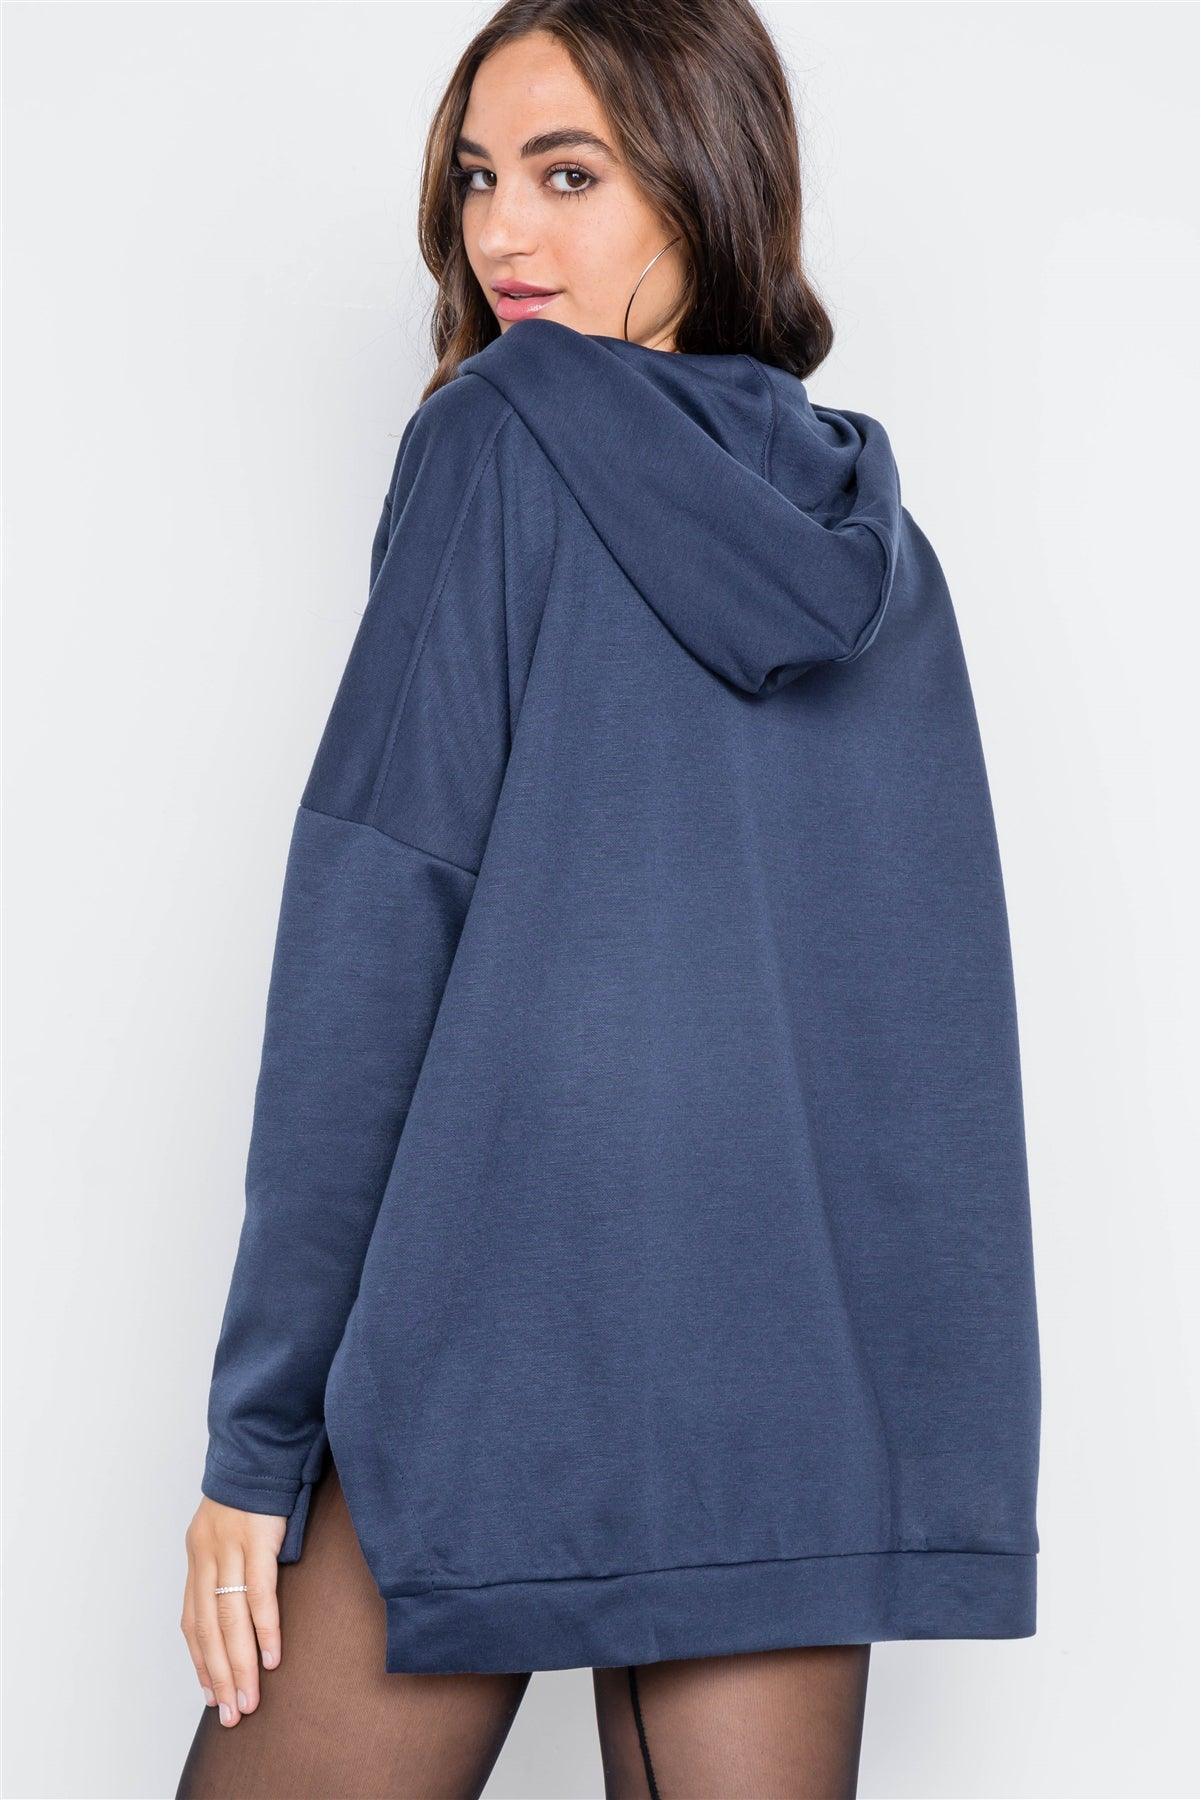 Navy Long Sleeve Solid Hoodie Sweater /2-2-2